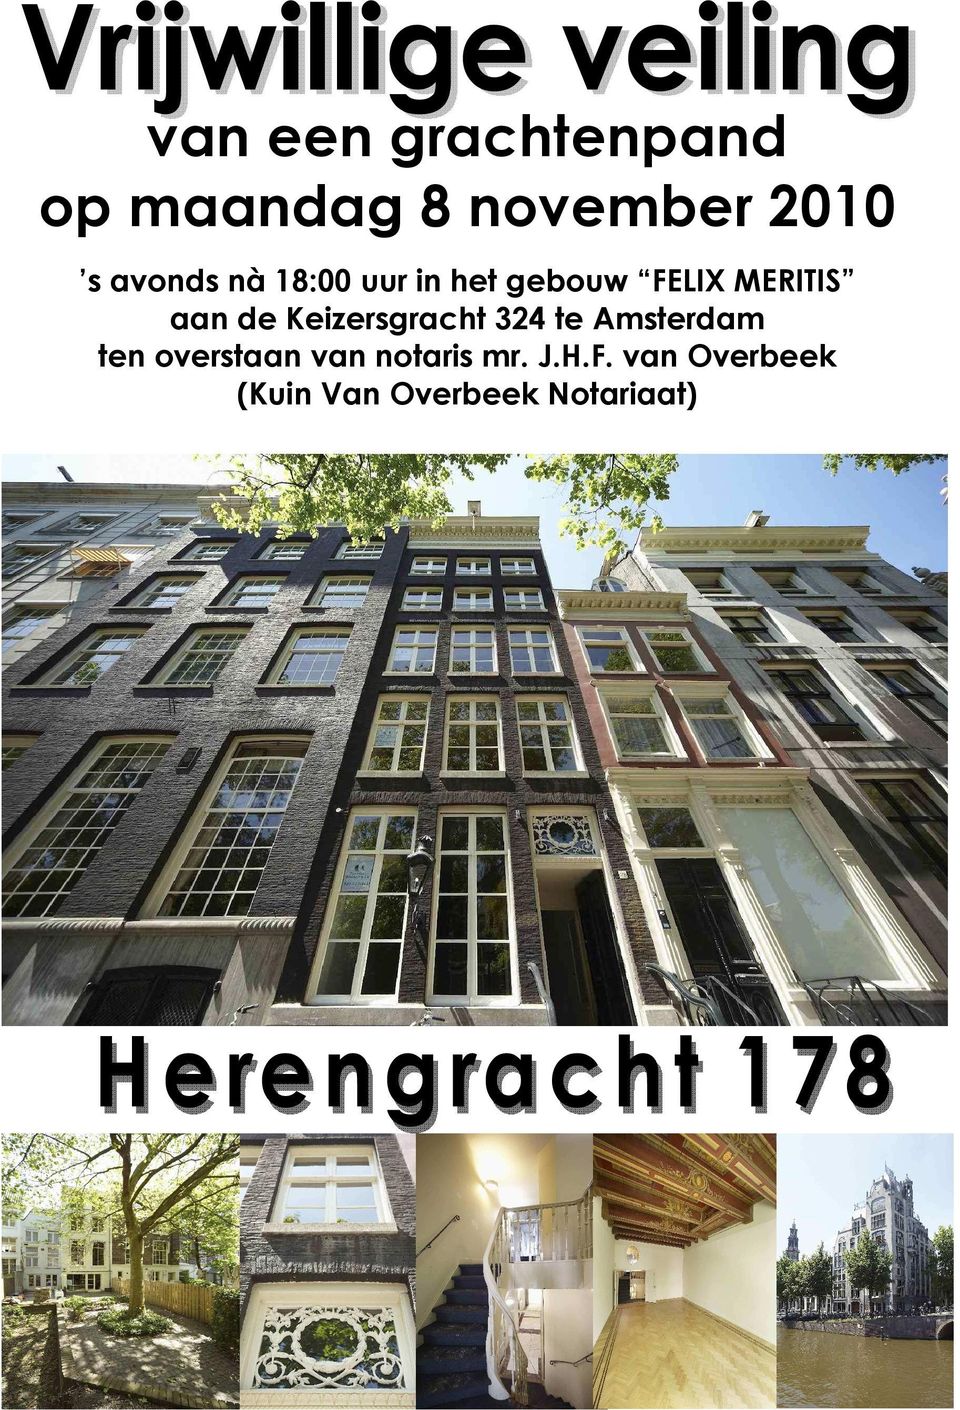 de Keizersgracht 324 te Amsterdam ten overstaan van